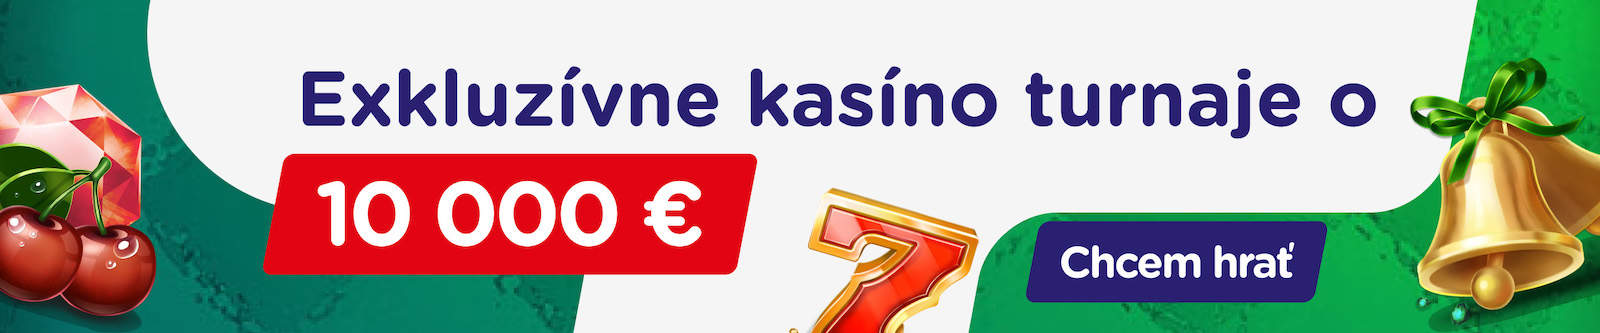 Turnamen kasino eksklusif seharga €10.000 di eTIPOS.sk